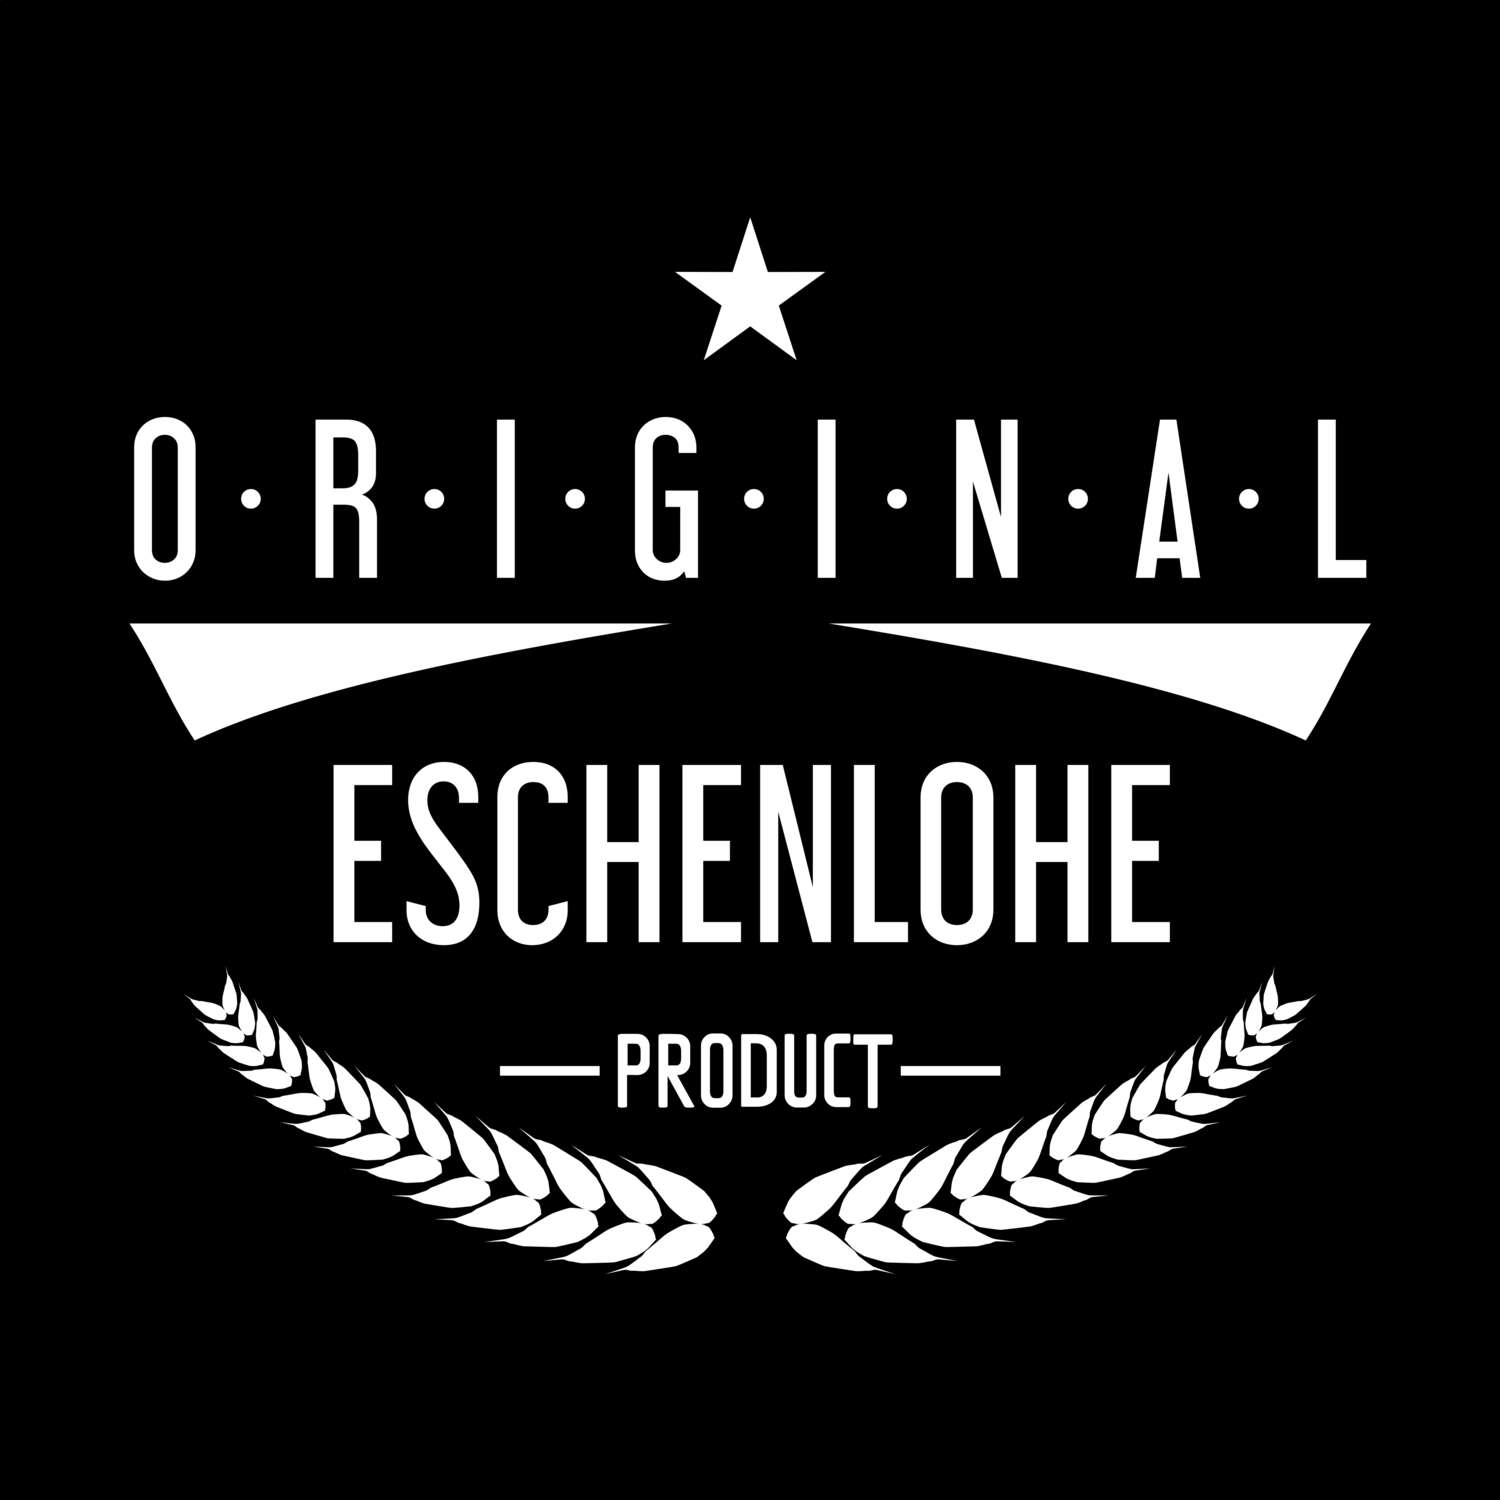 Eschenlohe T-Shirt »Original Product«